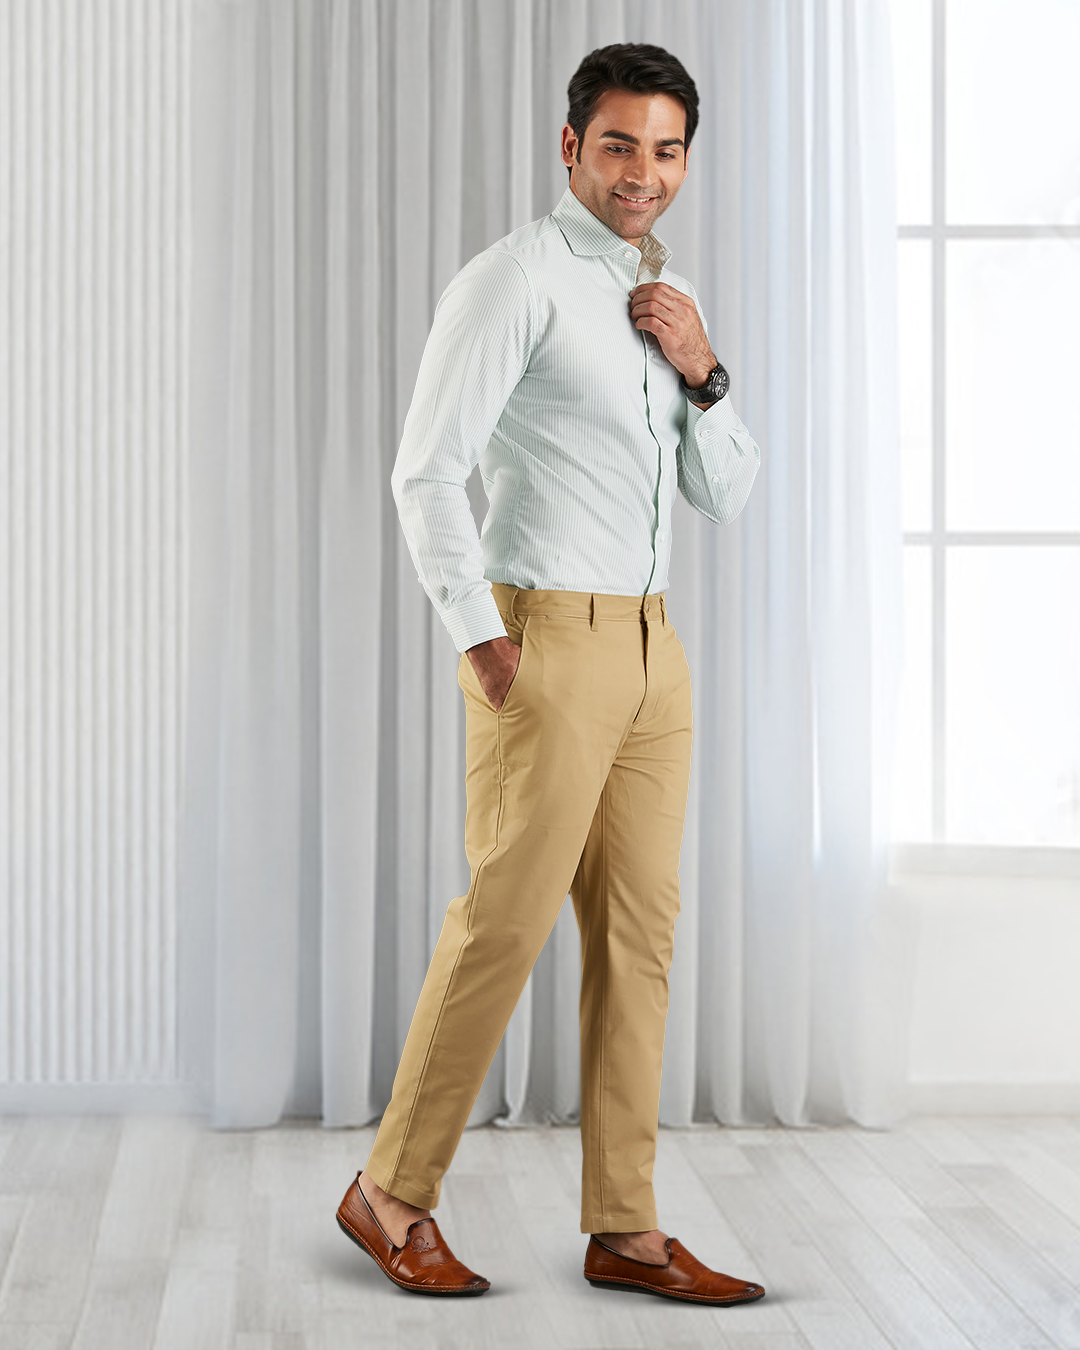 Model wearing custom Genoa Chino pants for men by Luxire in khaki hand in pocket